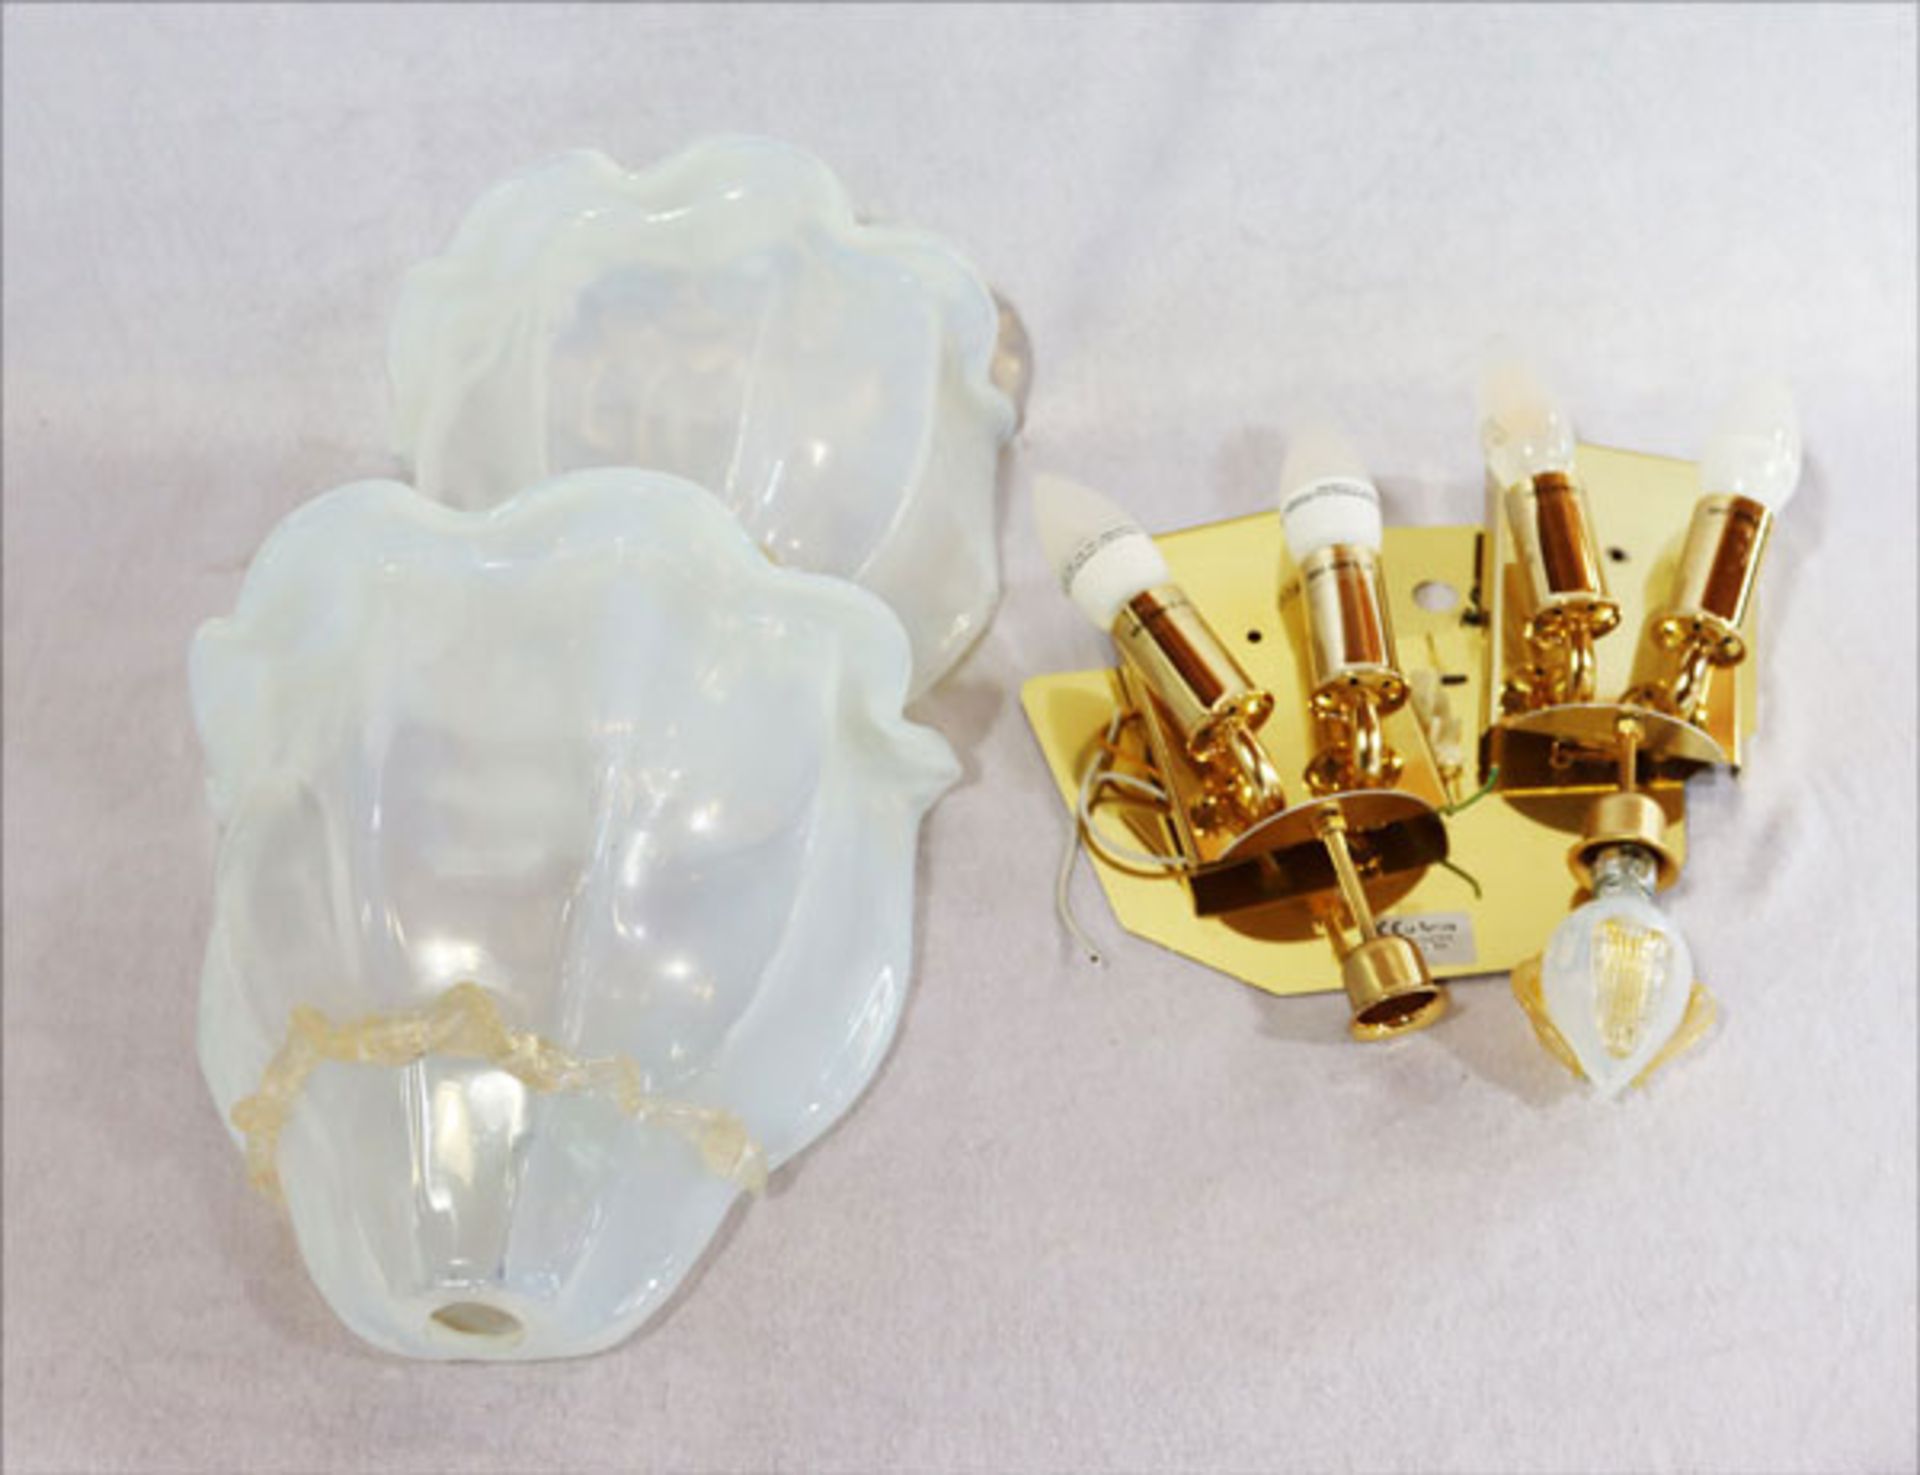 Paar Murano Glas Wandlampen, ein Endteil fehlt, T 14 cm, H 45 cm, B 28 cm, Funktion nicht geprüft,